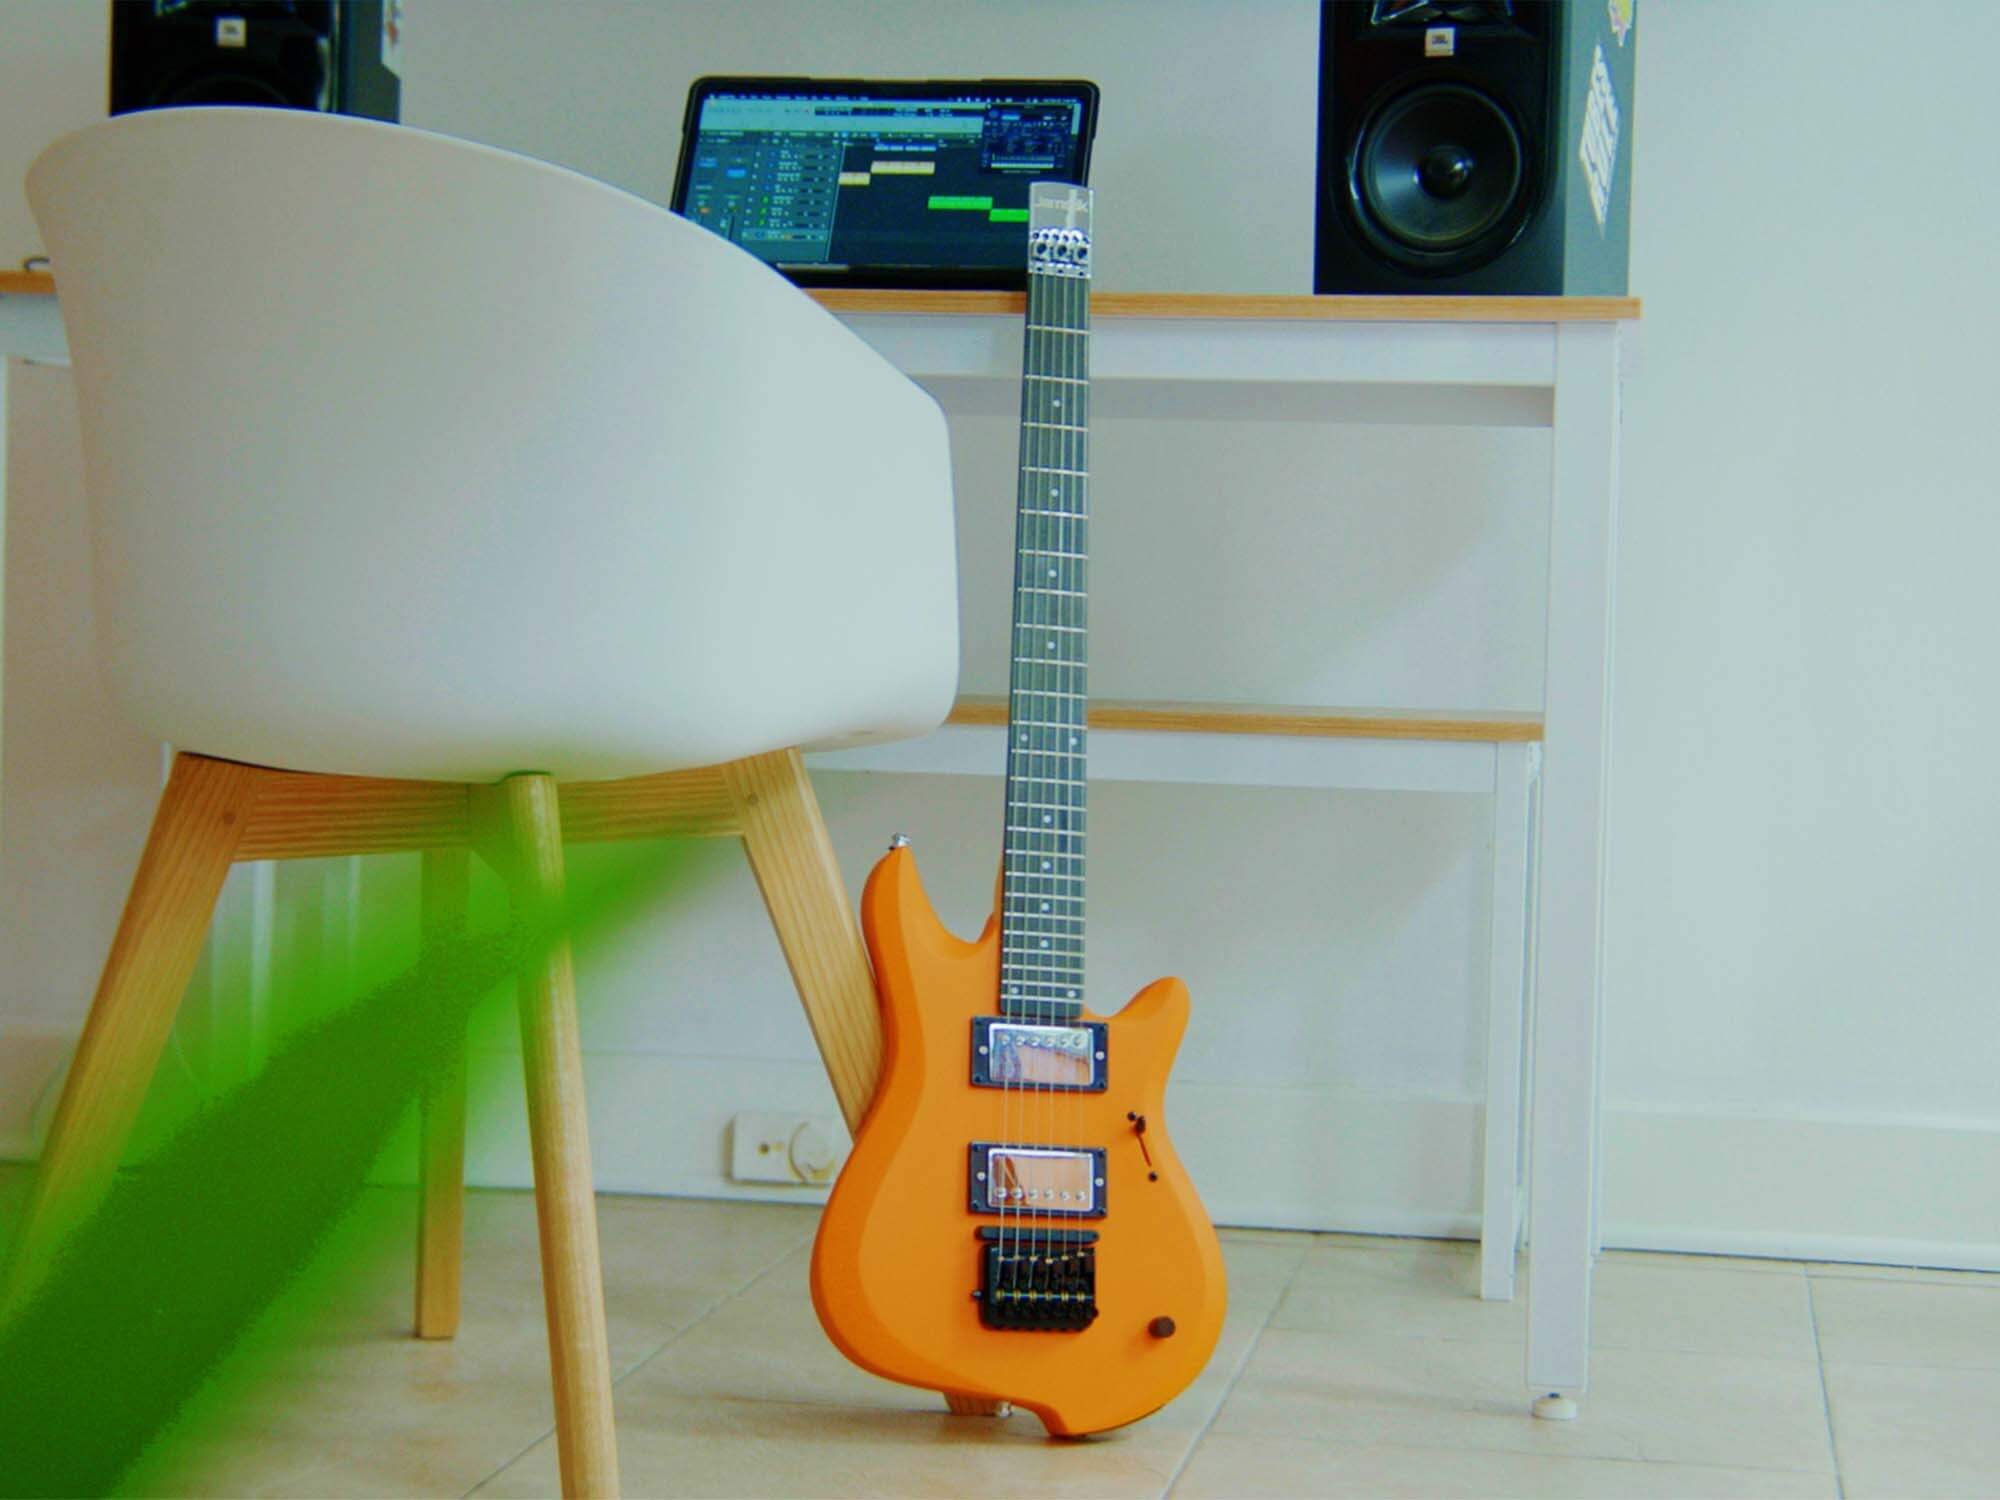 Jamstik studio midi guitar review